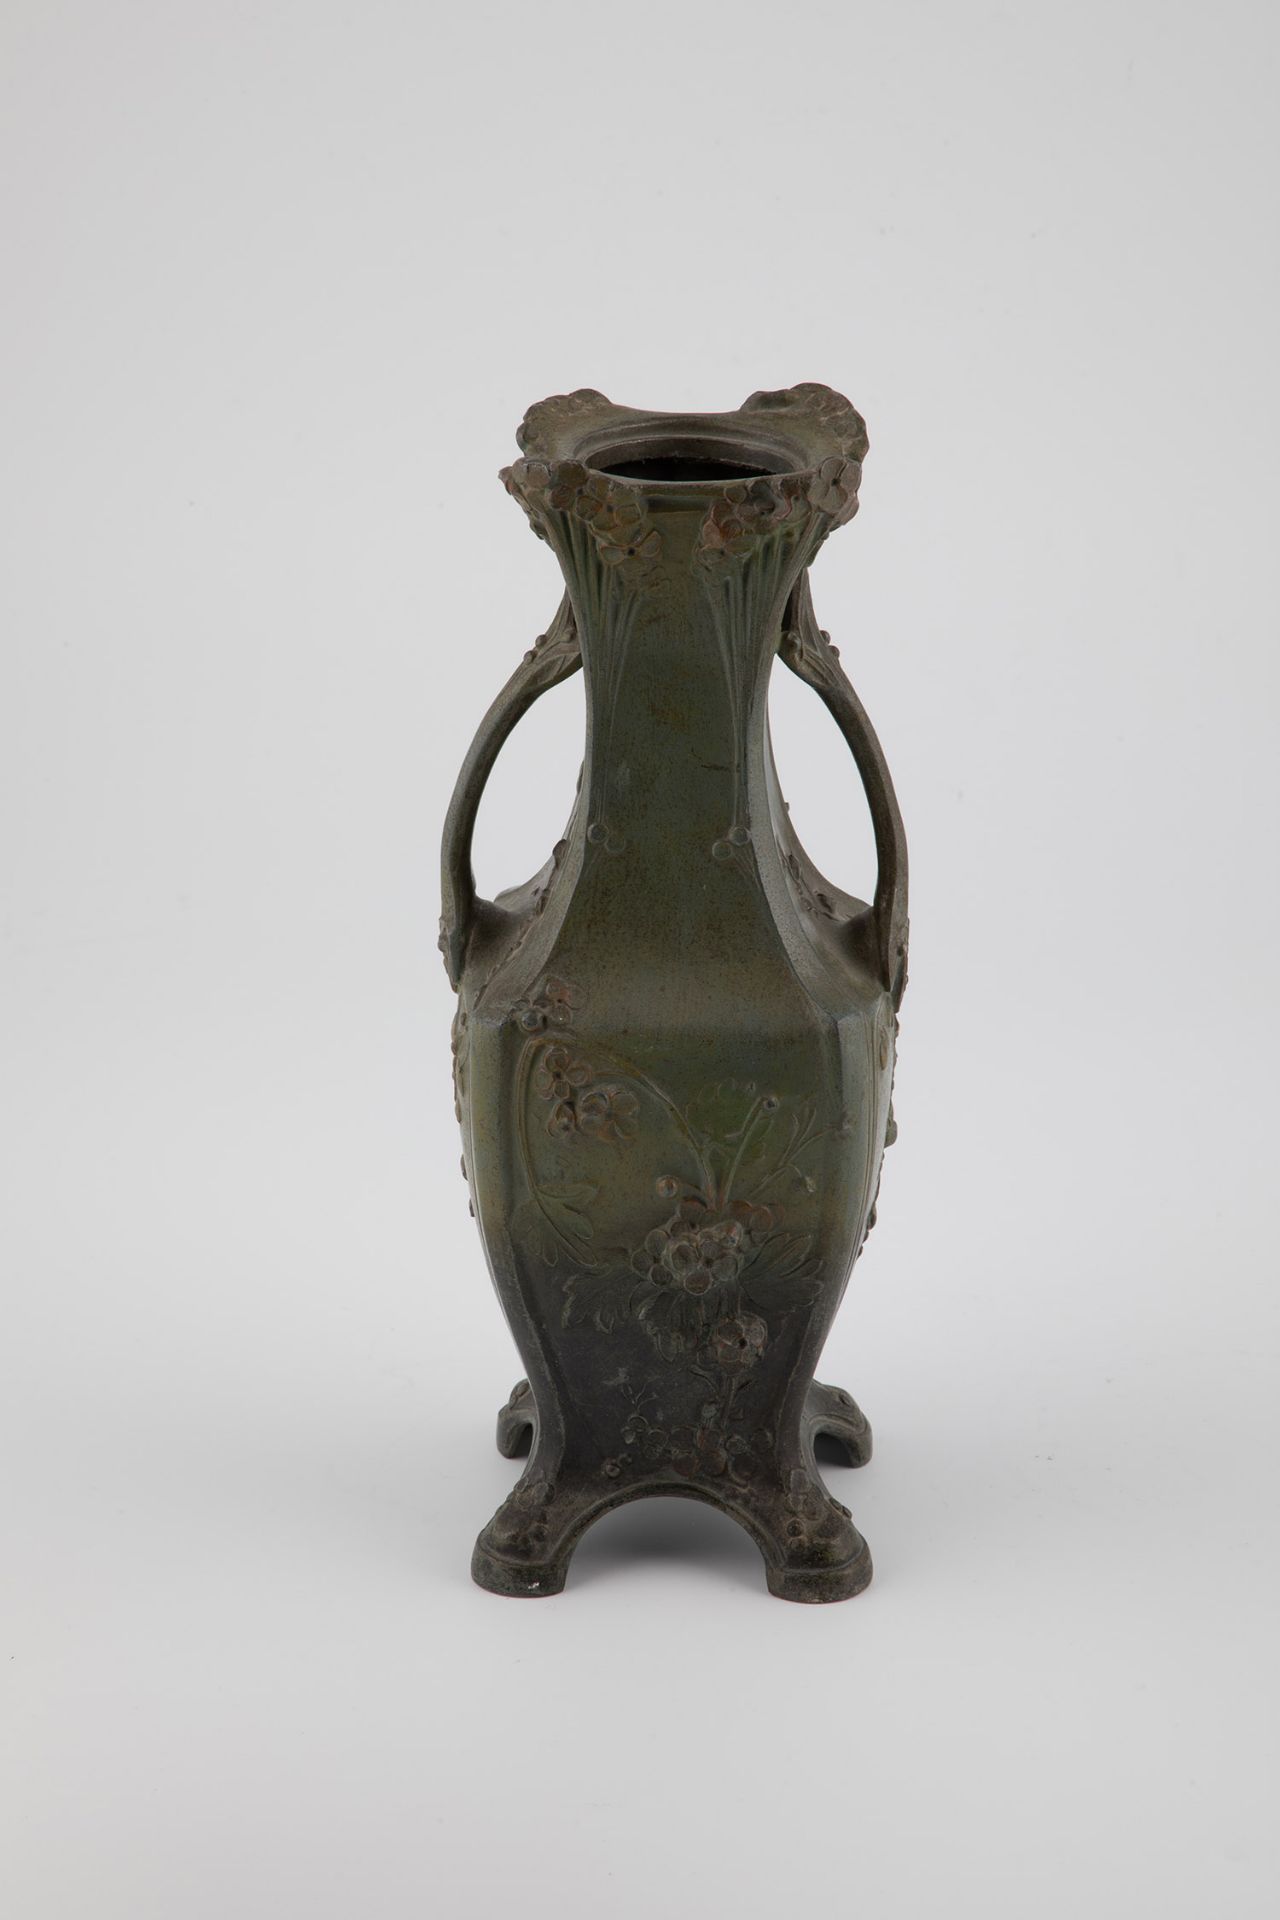 Art Nouveau vase - Image 3 of 3